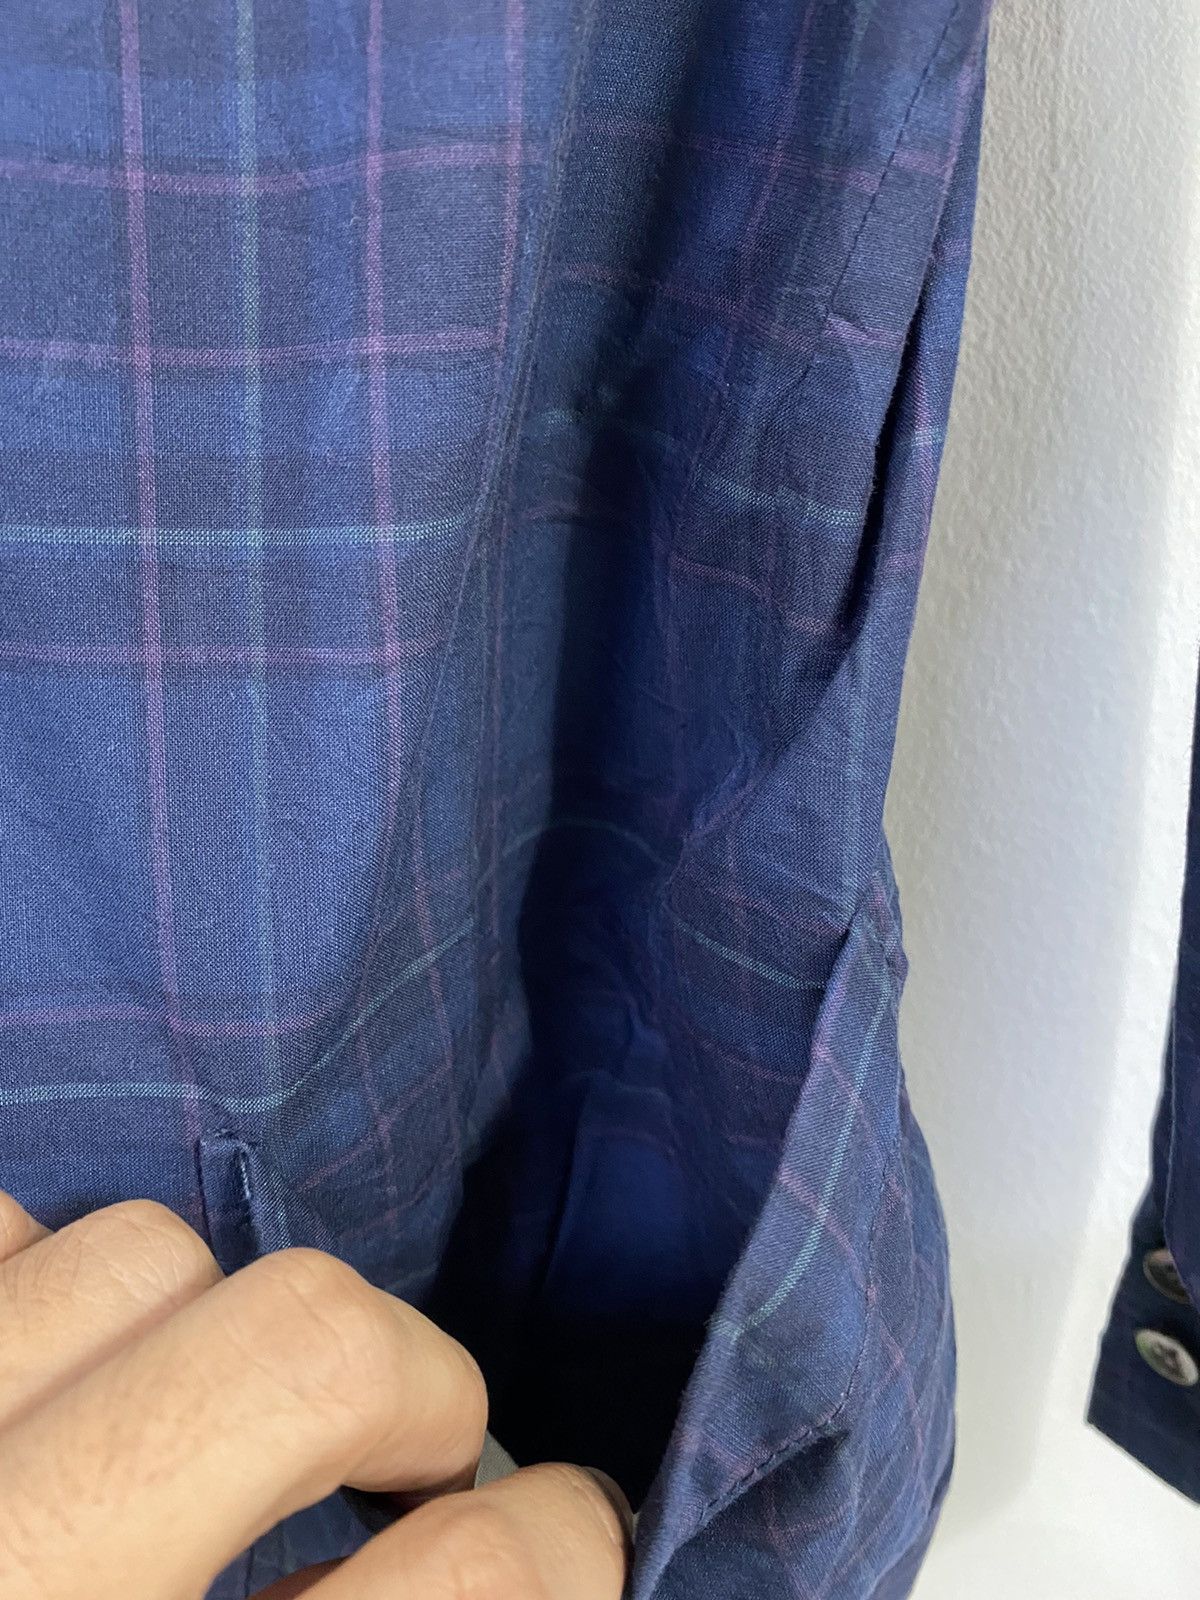 Beams+ Tartan Jacket Original Fabric Nice Design - 5